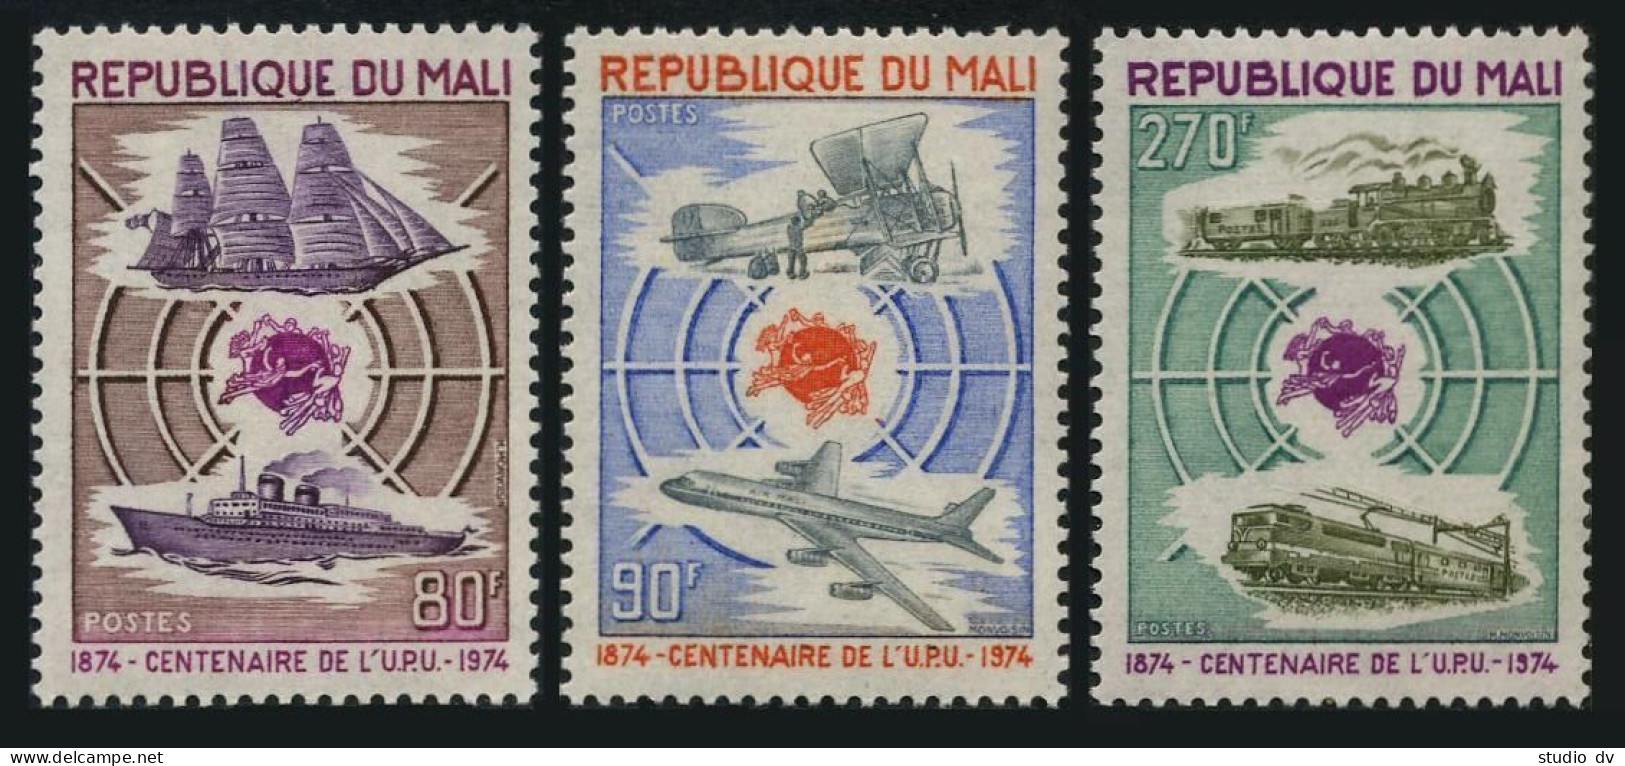 Mali 216-218,229-230,MNH.Michel 437/462. UPU-100,1974.UPU Day:Ship,Plane,Trains. - Mali (1959-...)